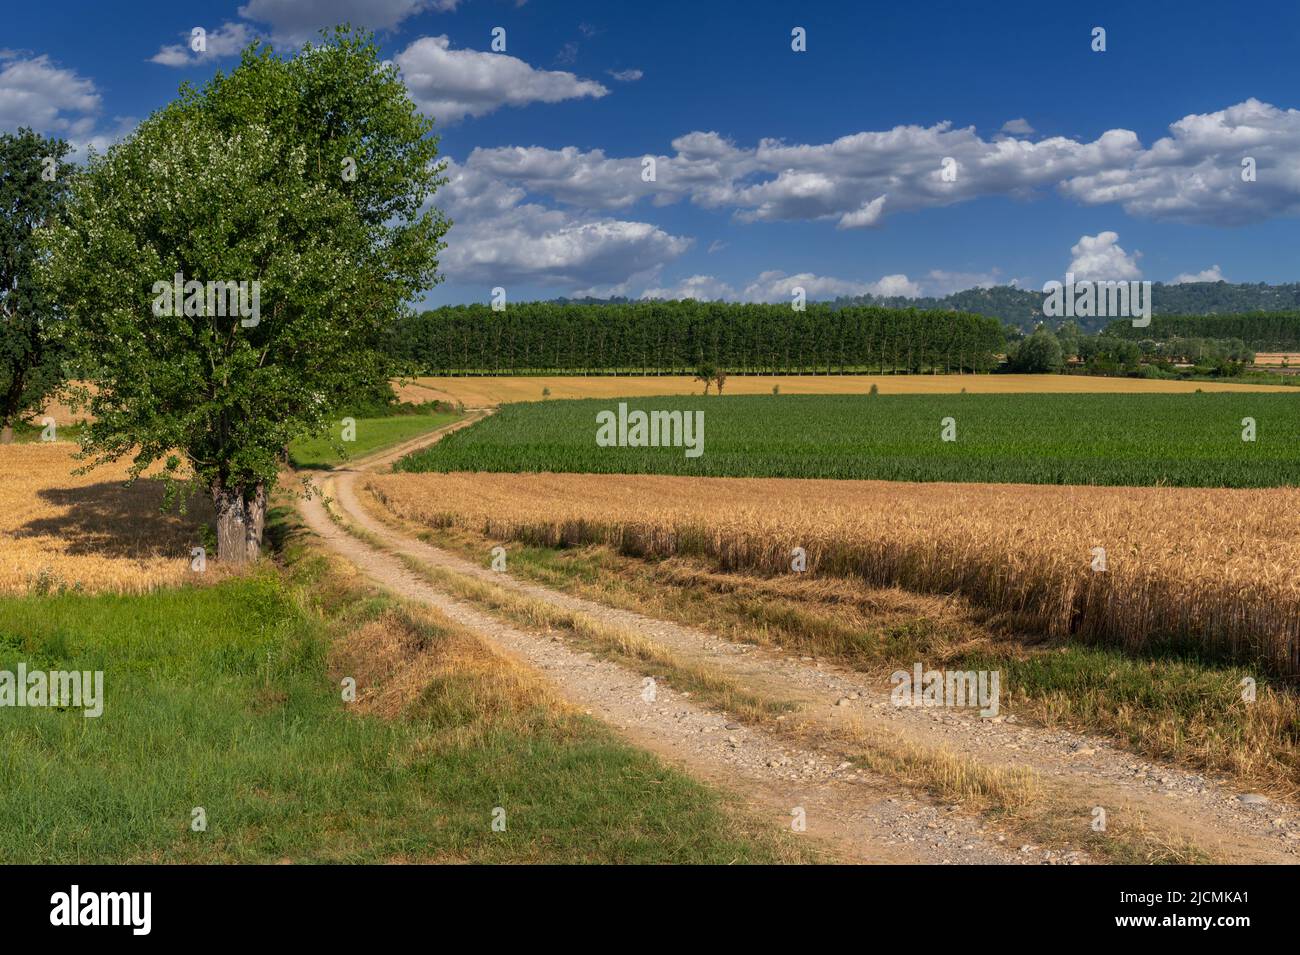 Strada di campagna tra campi di grano e mais con alberi di pioppo, paesaggio di campagna in provincia di Cuneo, Italia su cielo blu estivo con nuvole Foto Stock